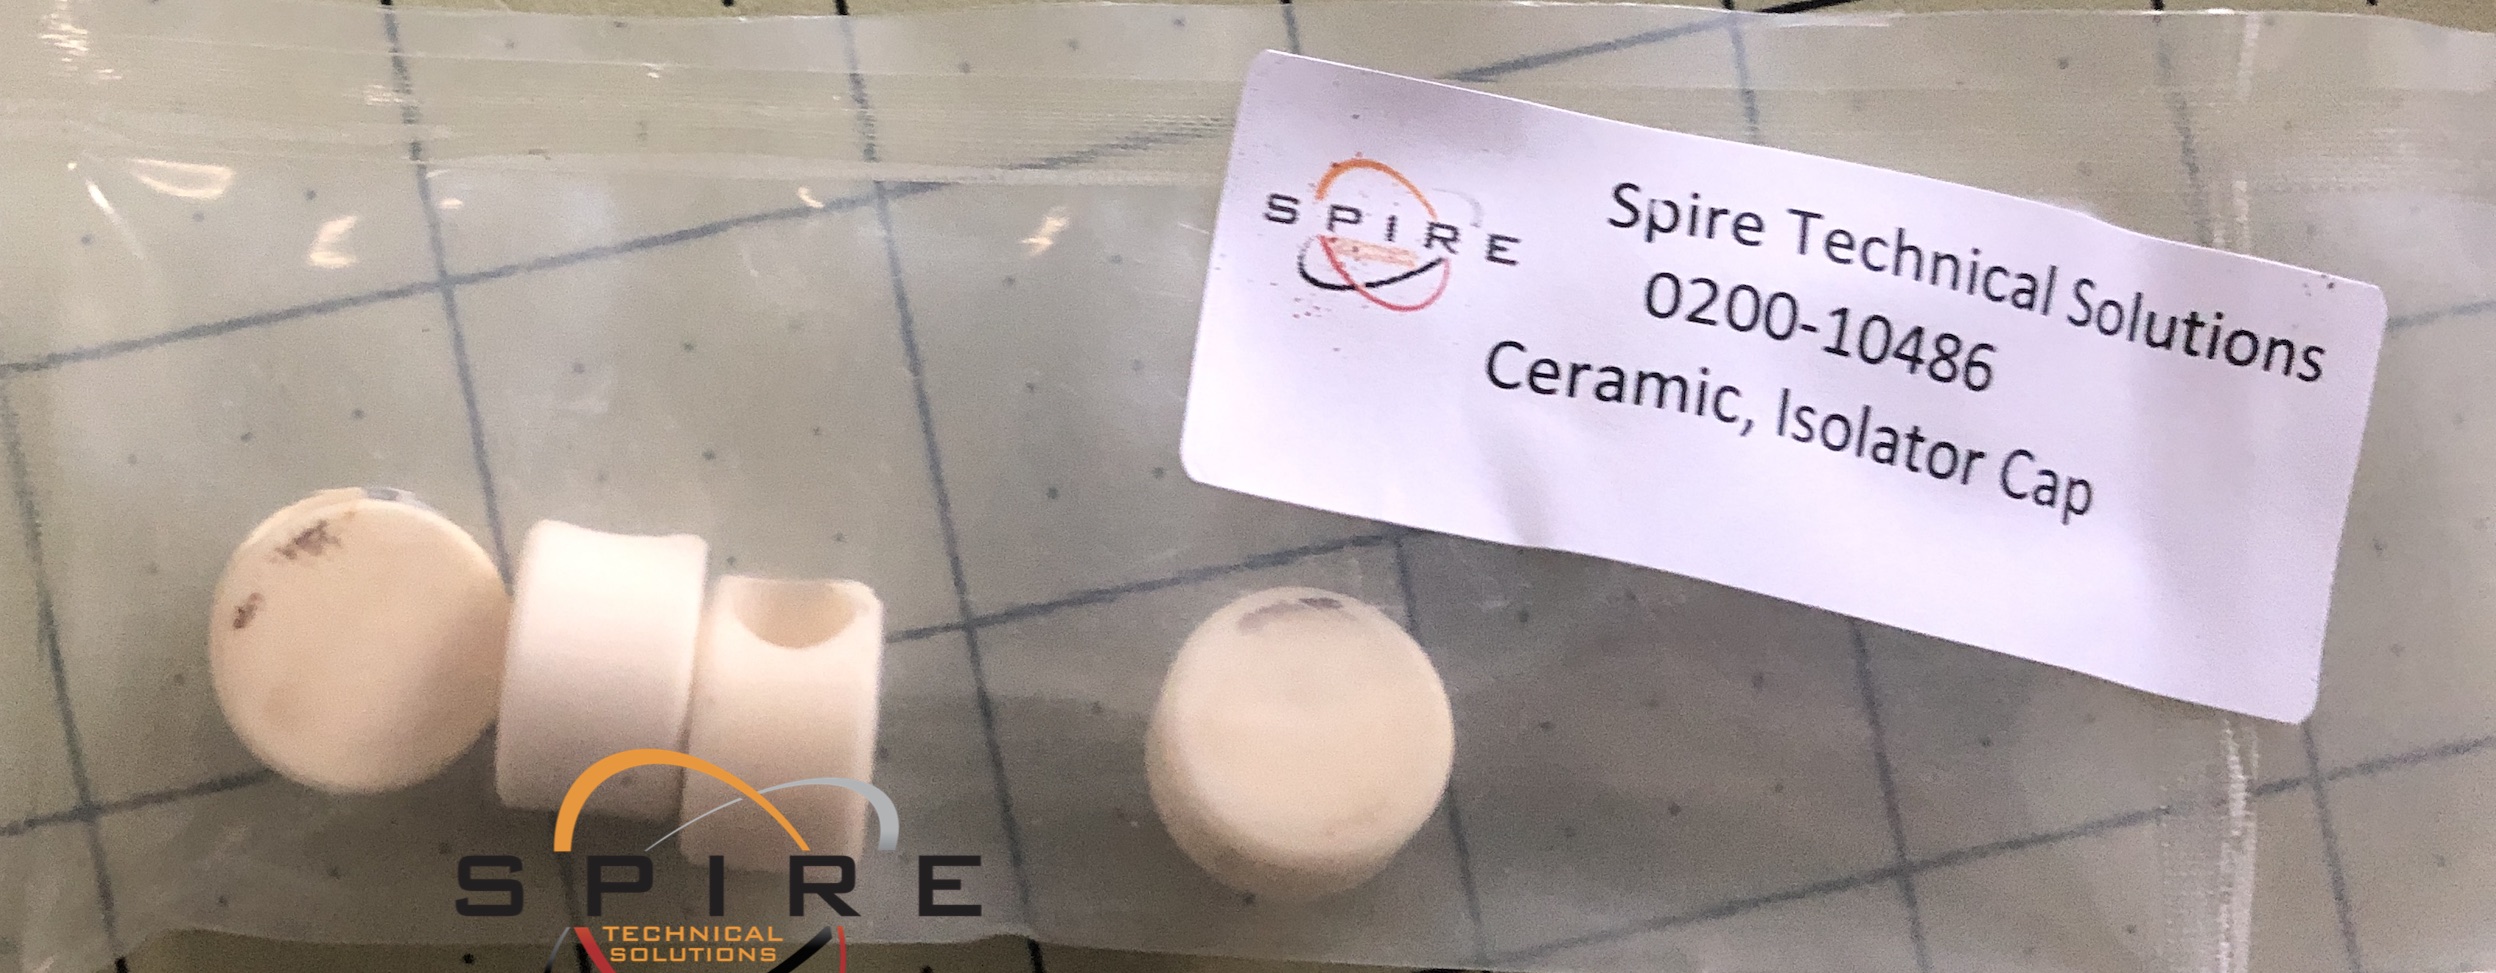 Ceramic, Isolator Cap